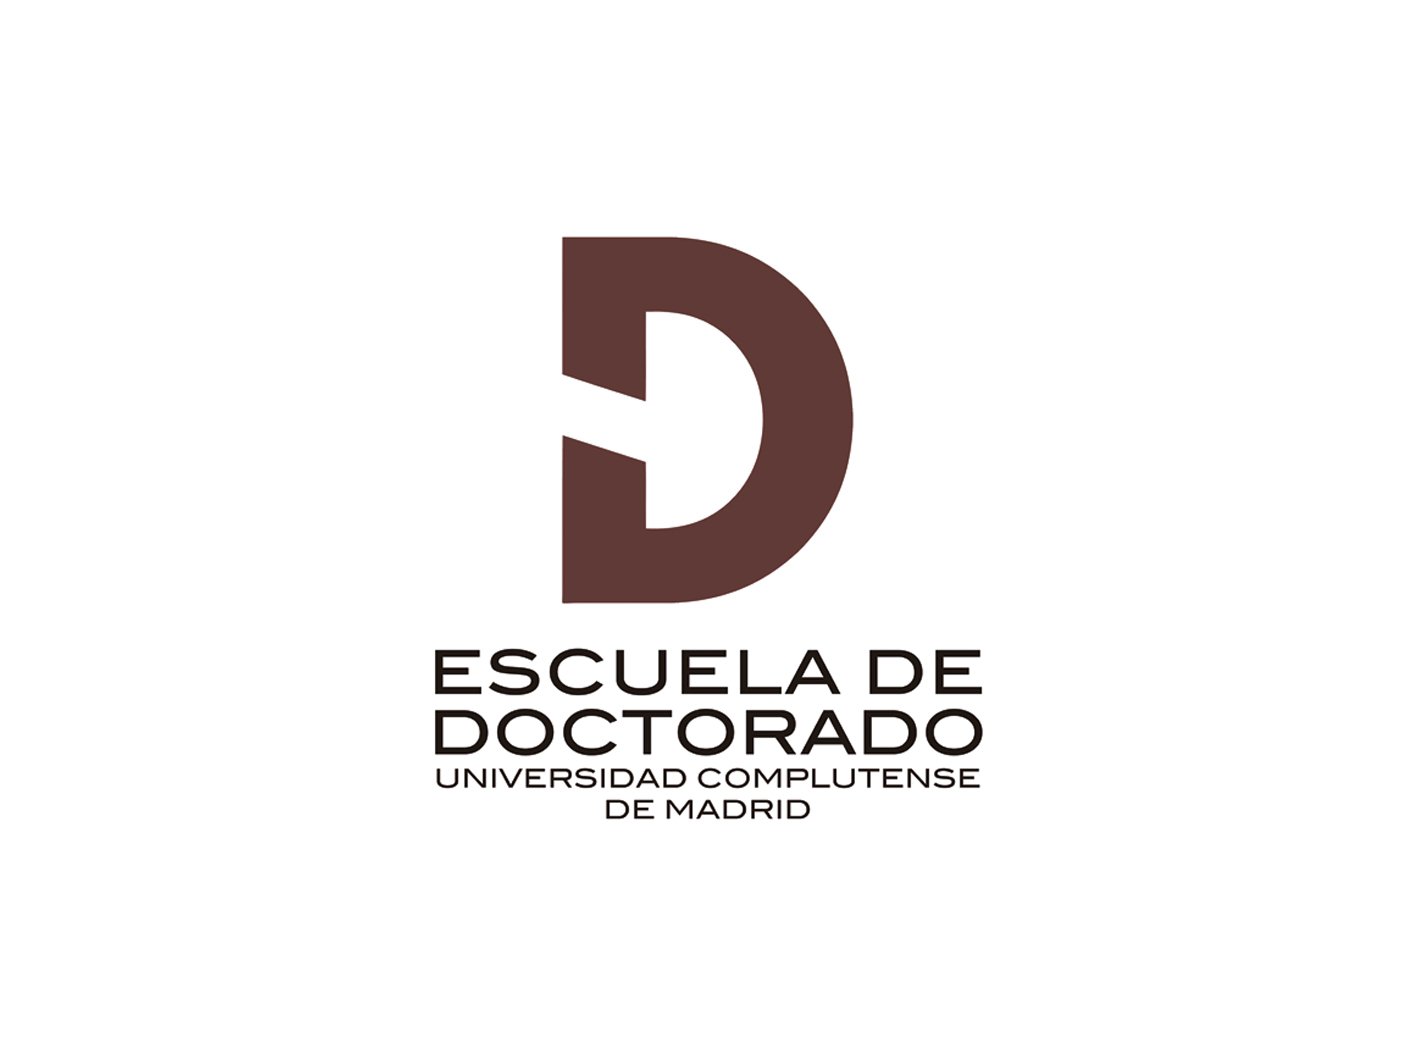 Logotipo de la Escuela de Doctorado de la Universidad Complutense de Madrid. Elaborado por Agencia Diagonal.